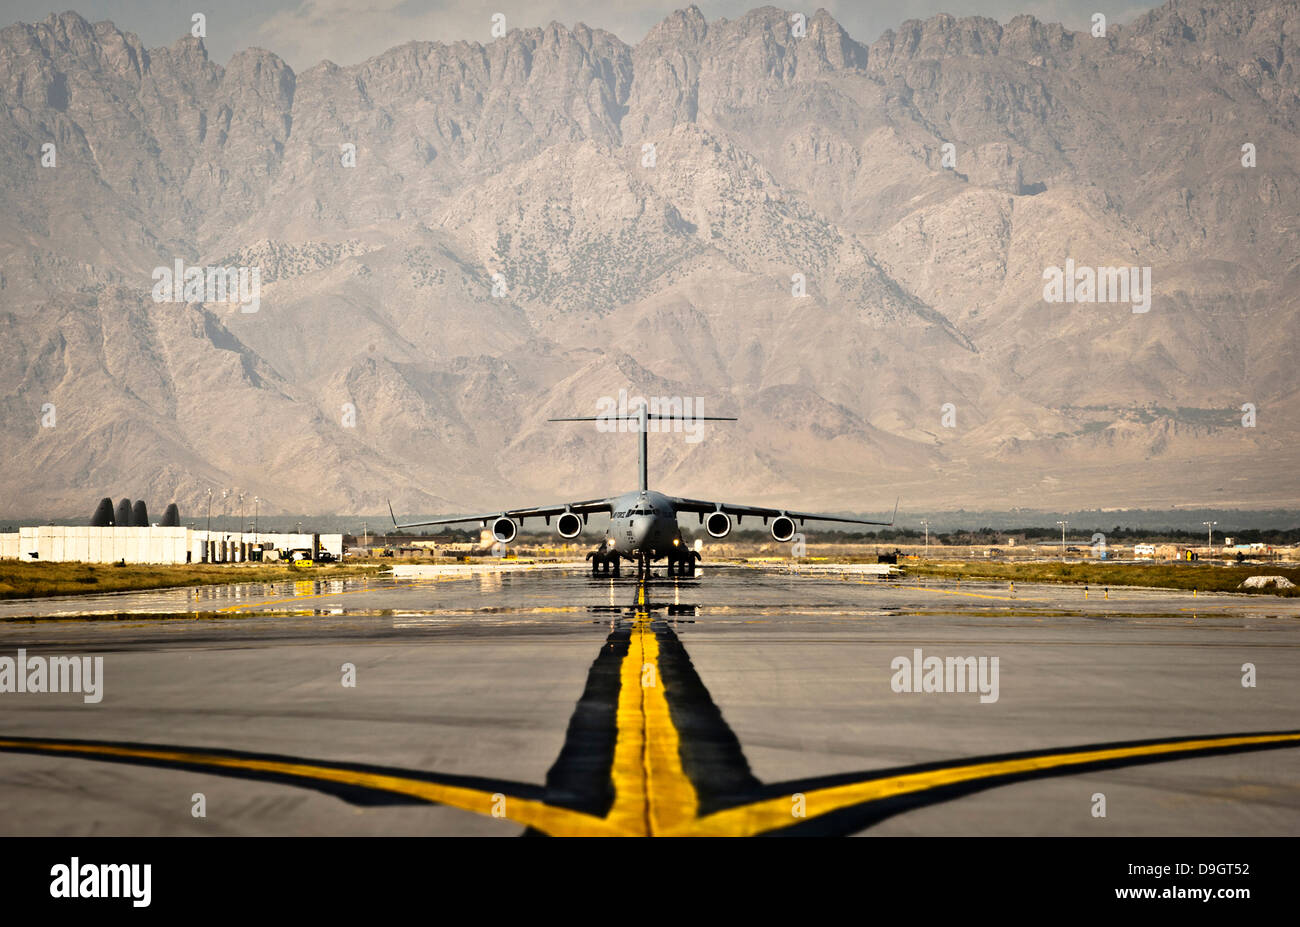 25 septembre 2012 - UN C-17 Globemaster III des taxis à sa place de stationnement à l'aérodrome de Bagram, en Afghanistan. Banque D'Images